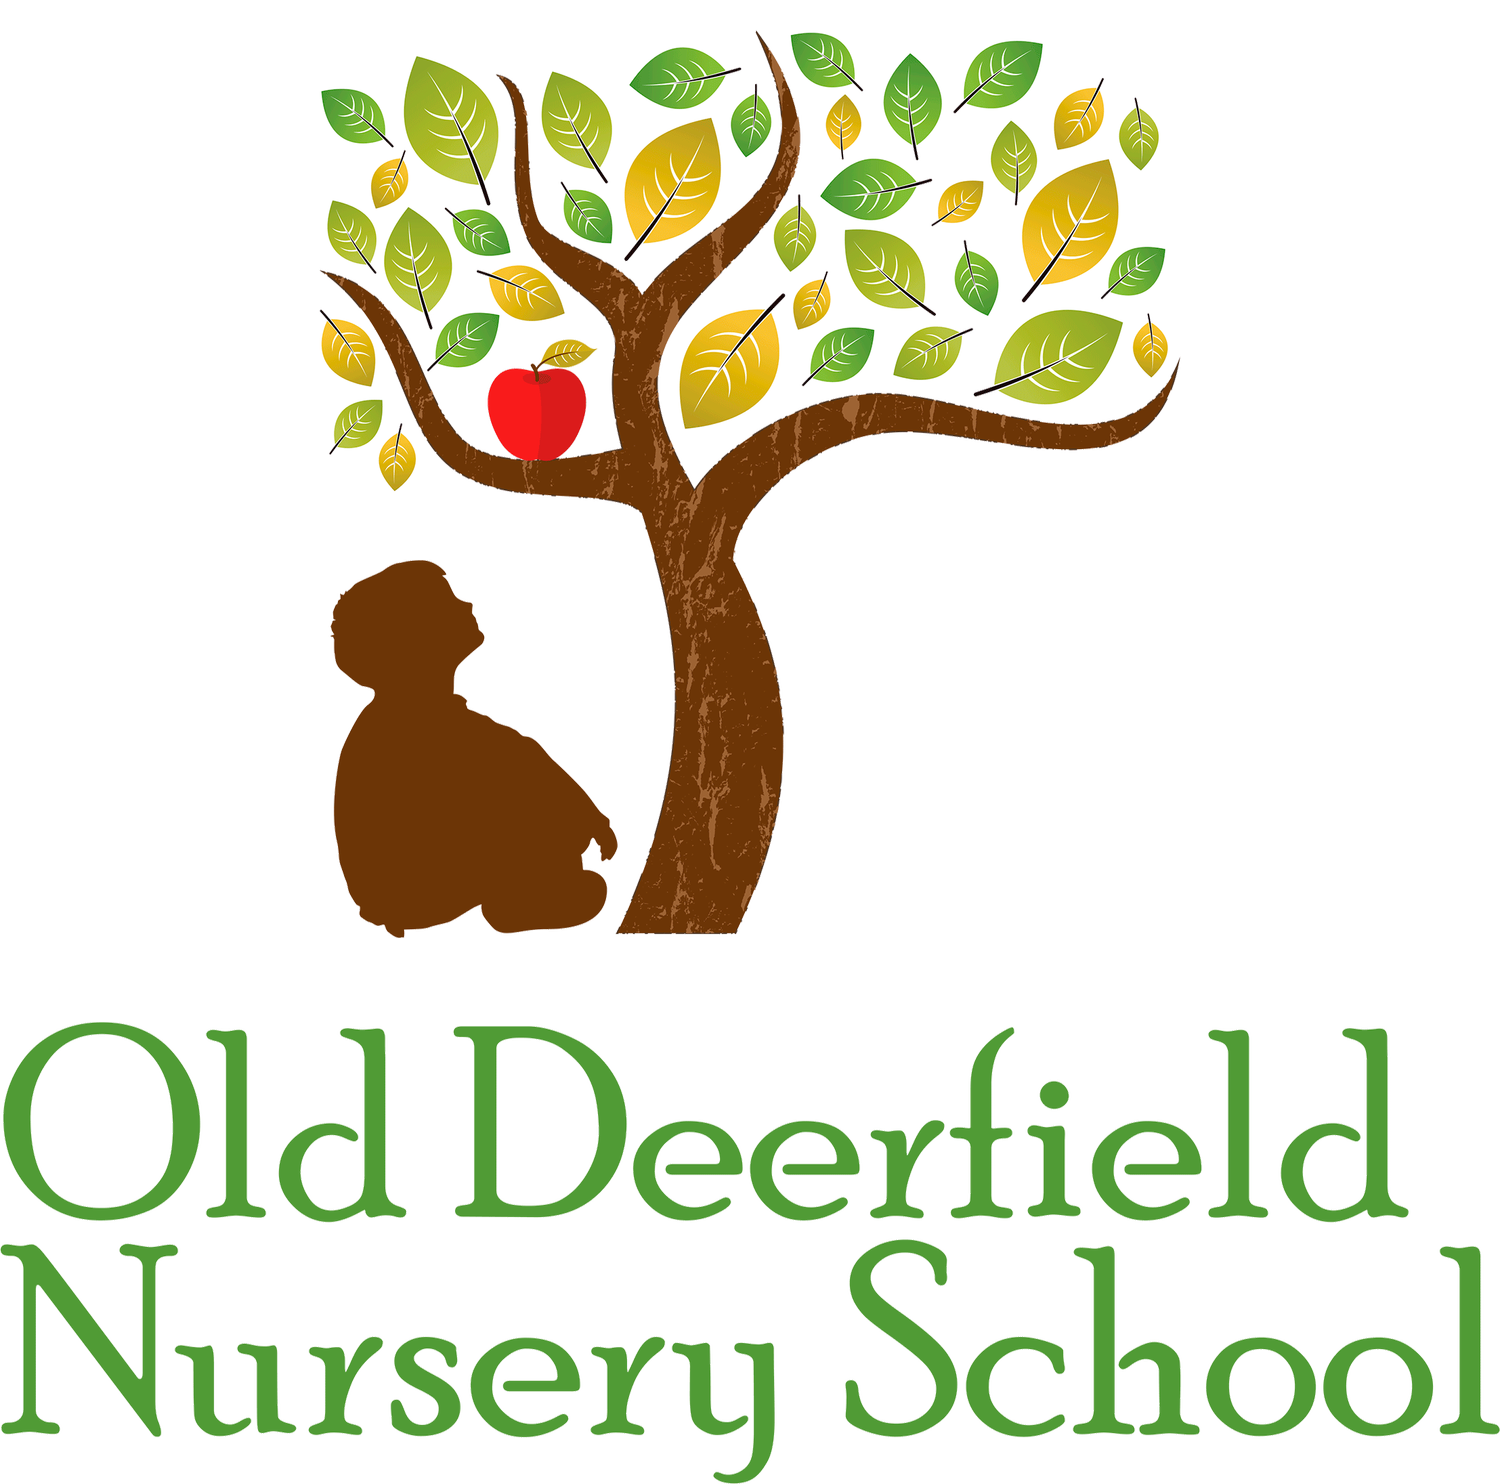 Old Deerfield Nursery School